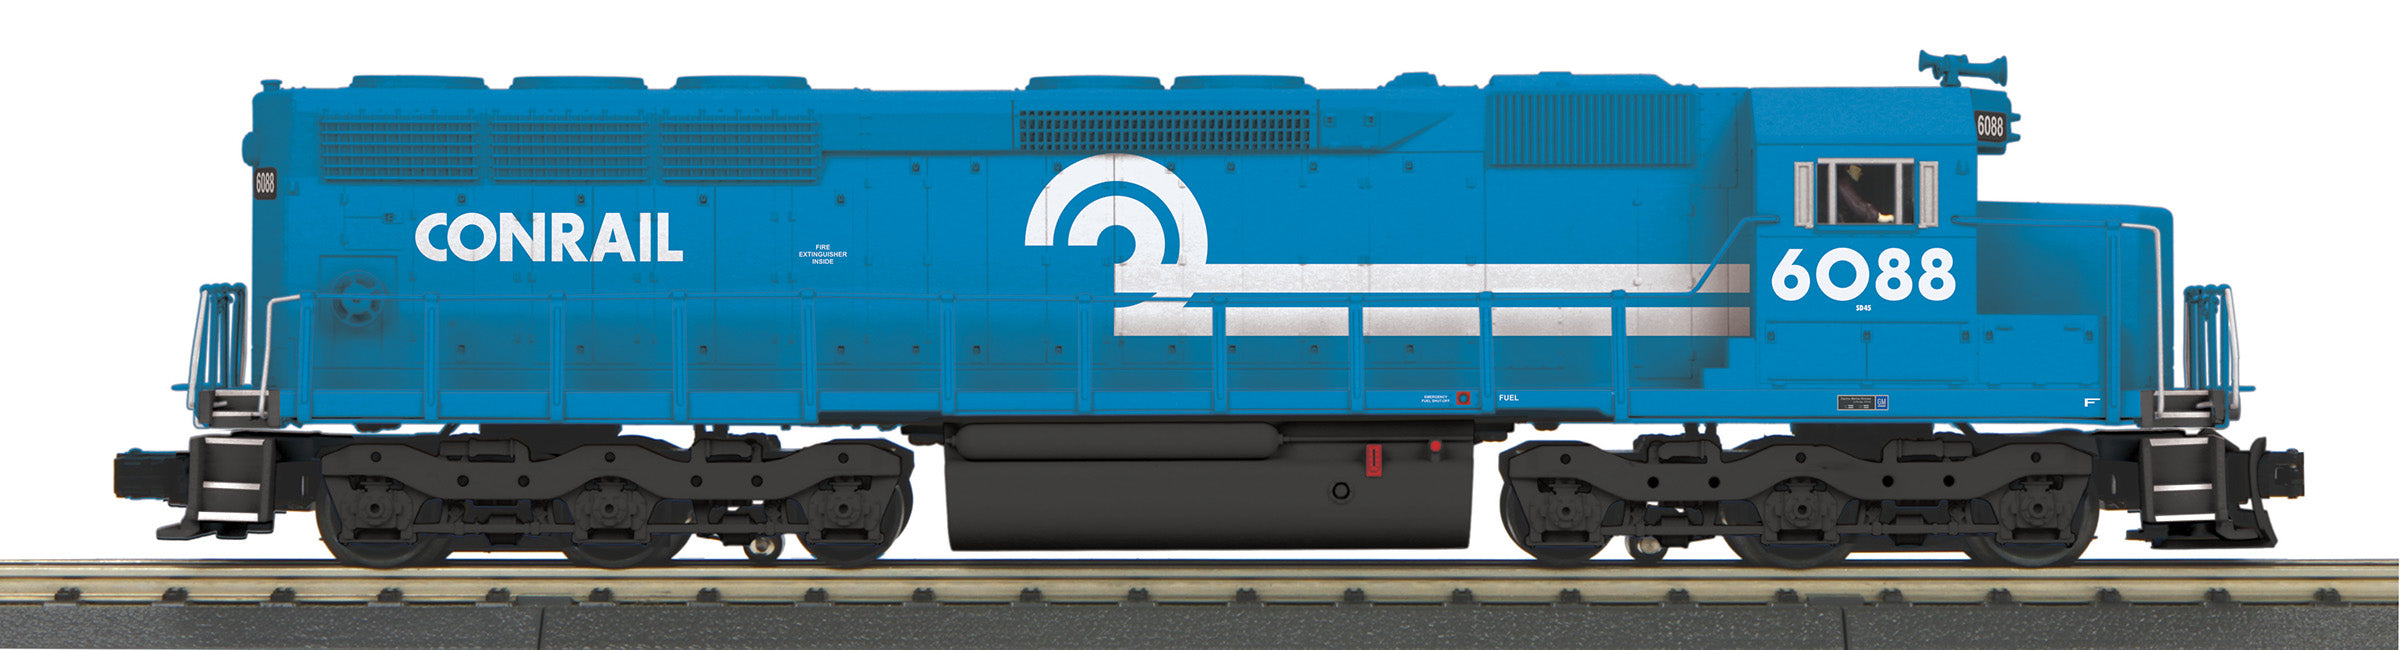 MTH 30-21119-1 - SD-45 Diesel Engine "Conrail" #6088 w/ PS3